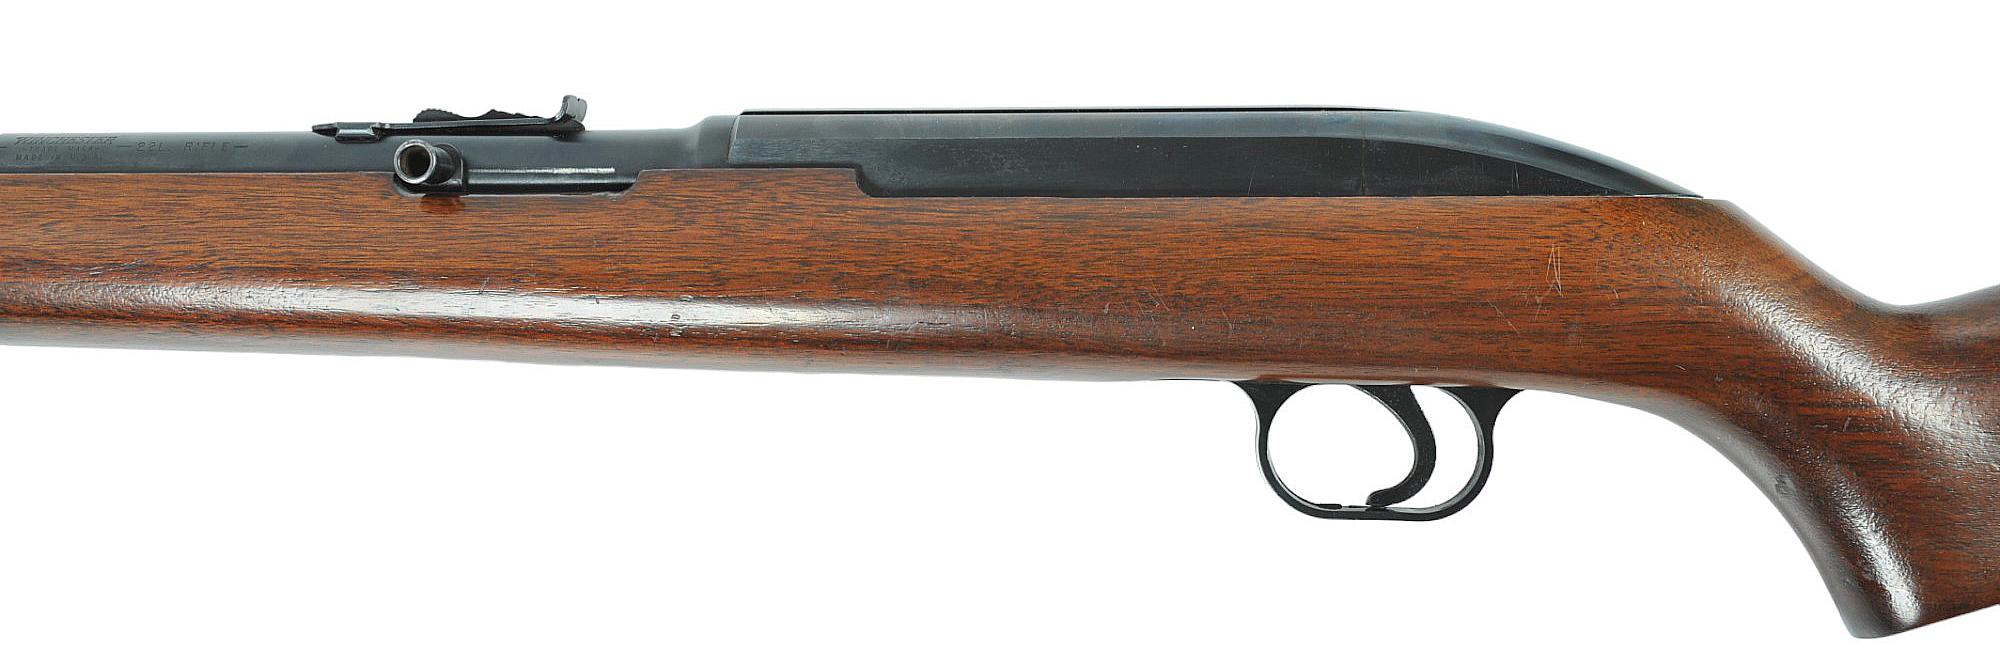 Winchester Model 77 .22LR Semi-auto Rifle FFL Required: 175845 (VDM1)